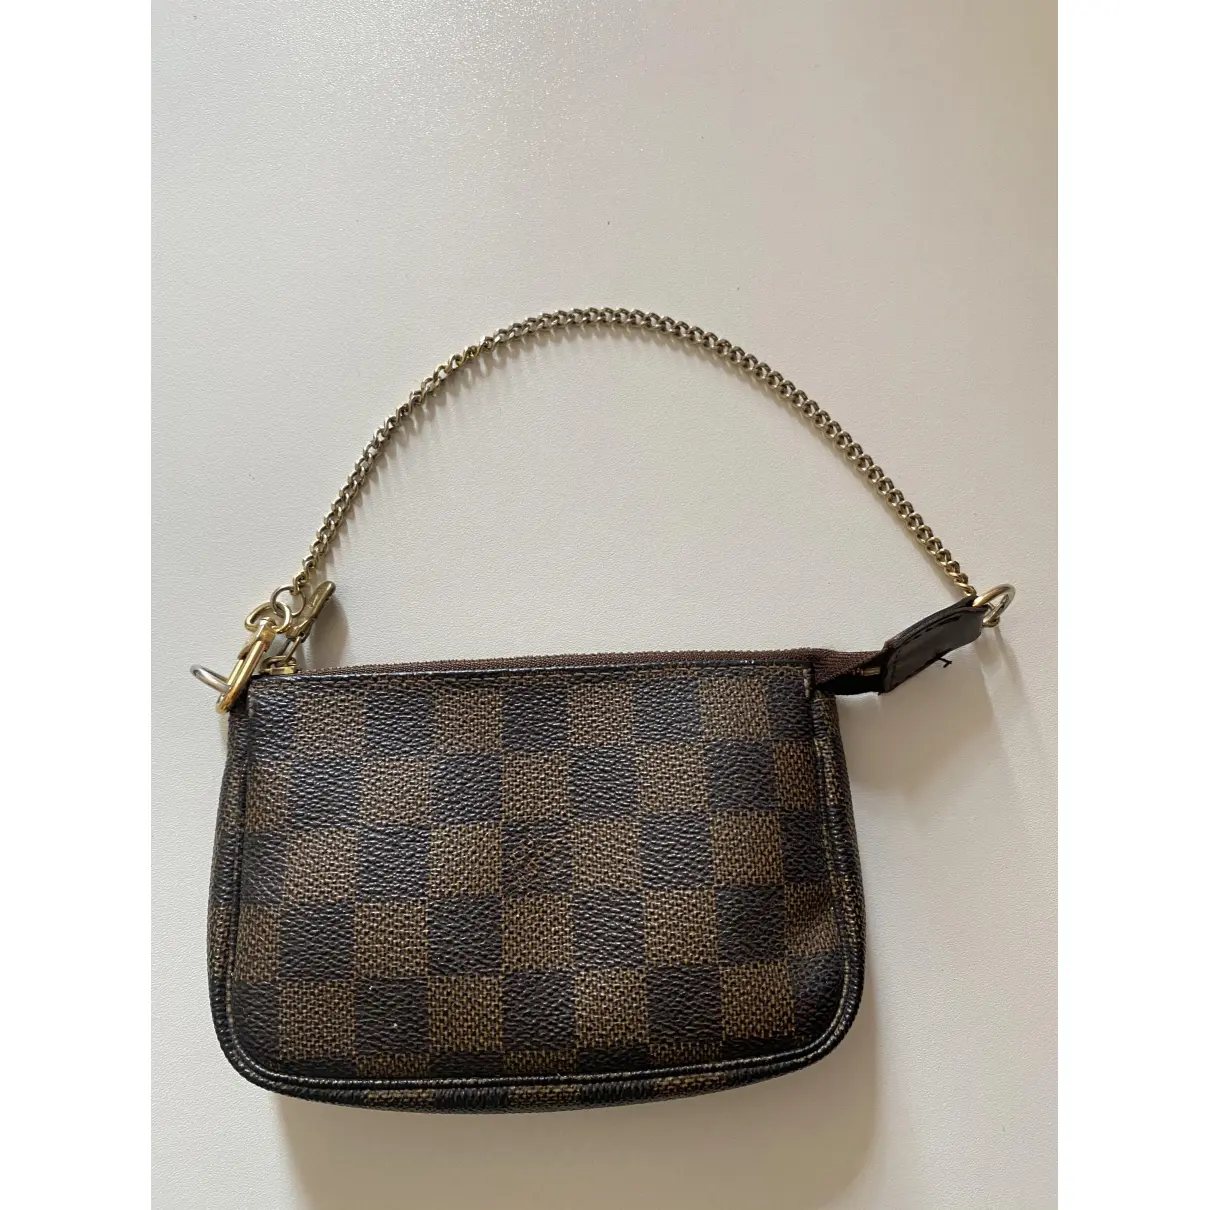 Buy Louis Vuitton Pochette Accessoire leather clutch bag online